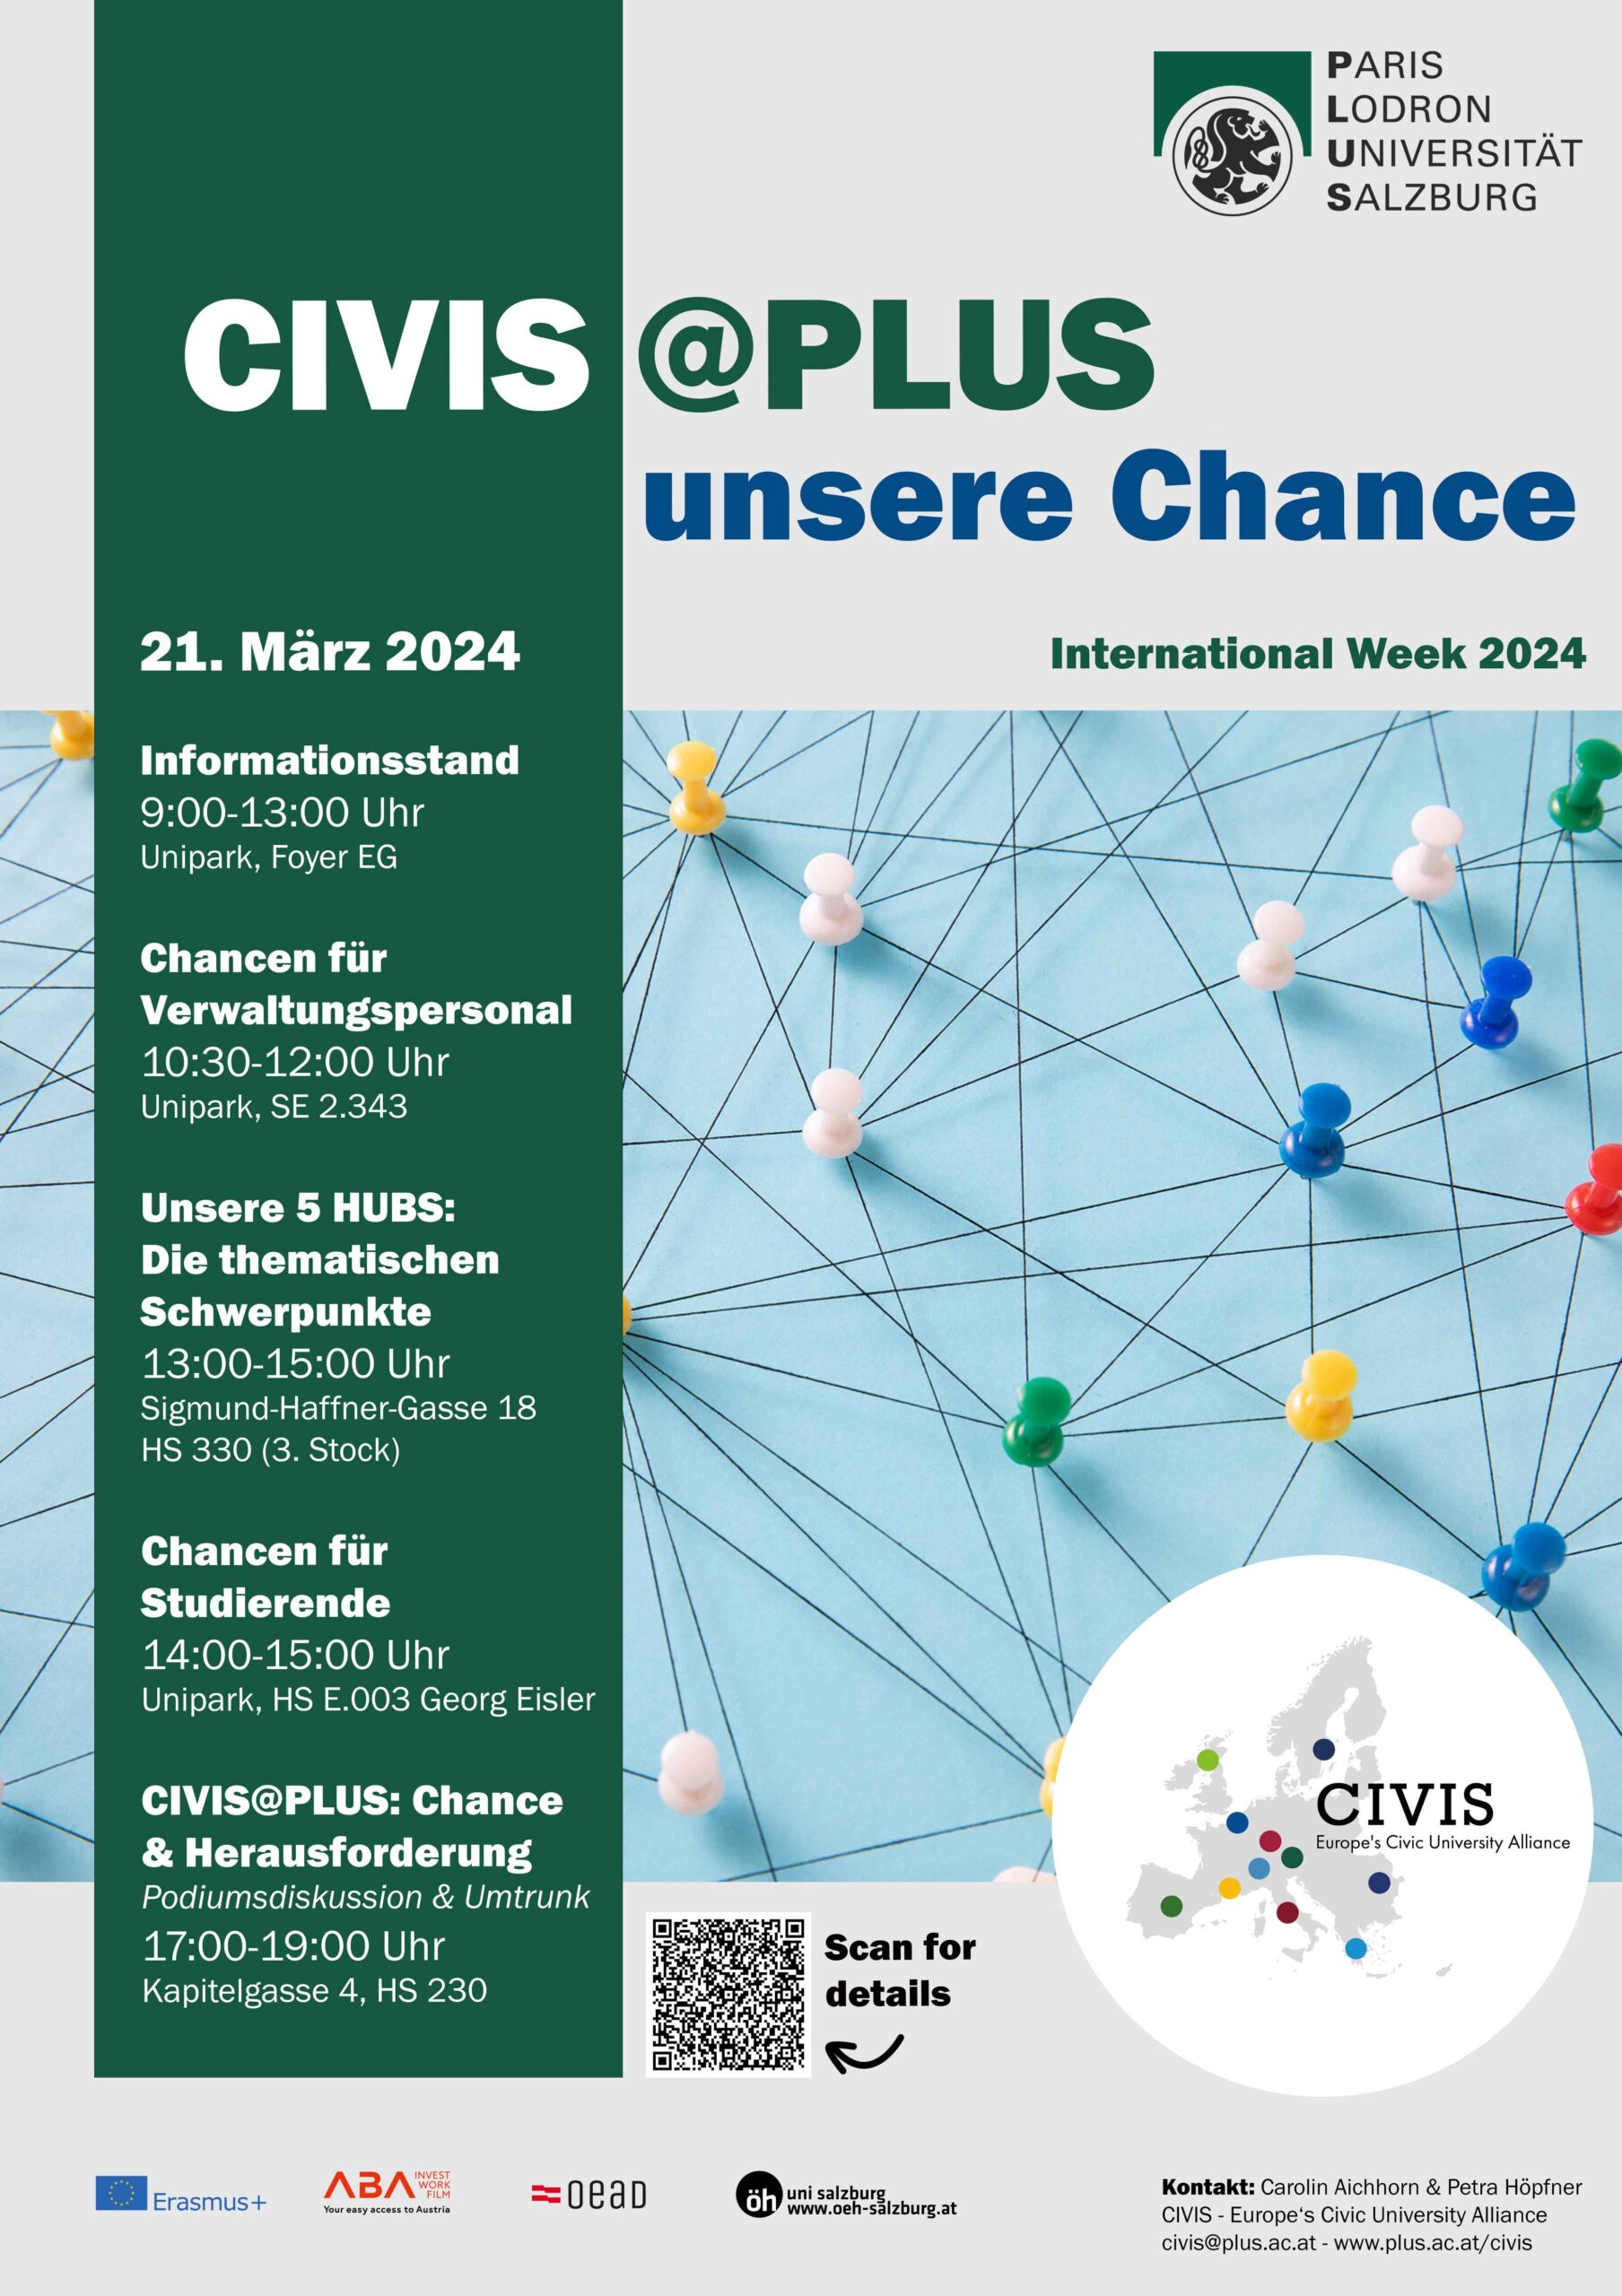 CIVIS @ PLUS - Unsere Chance